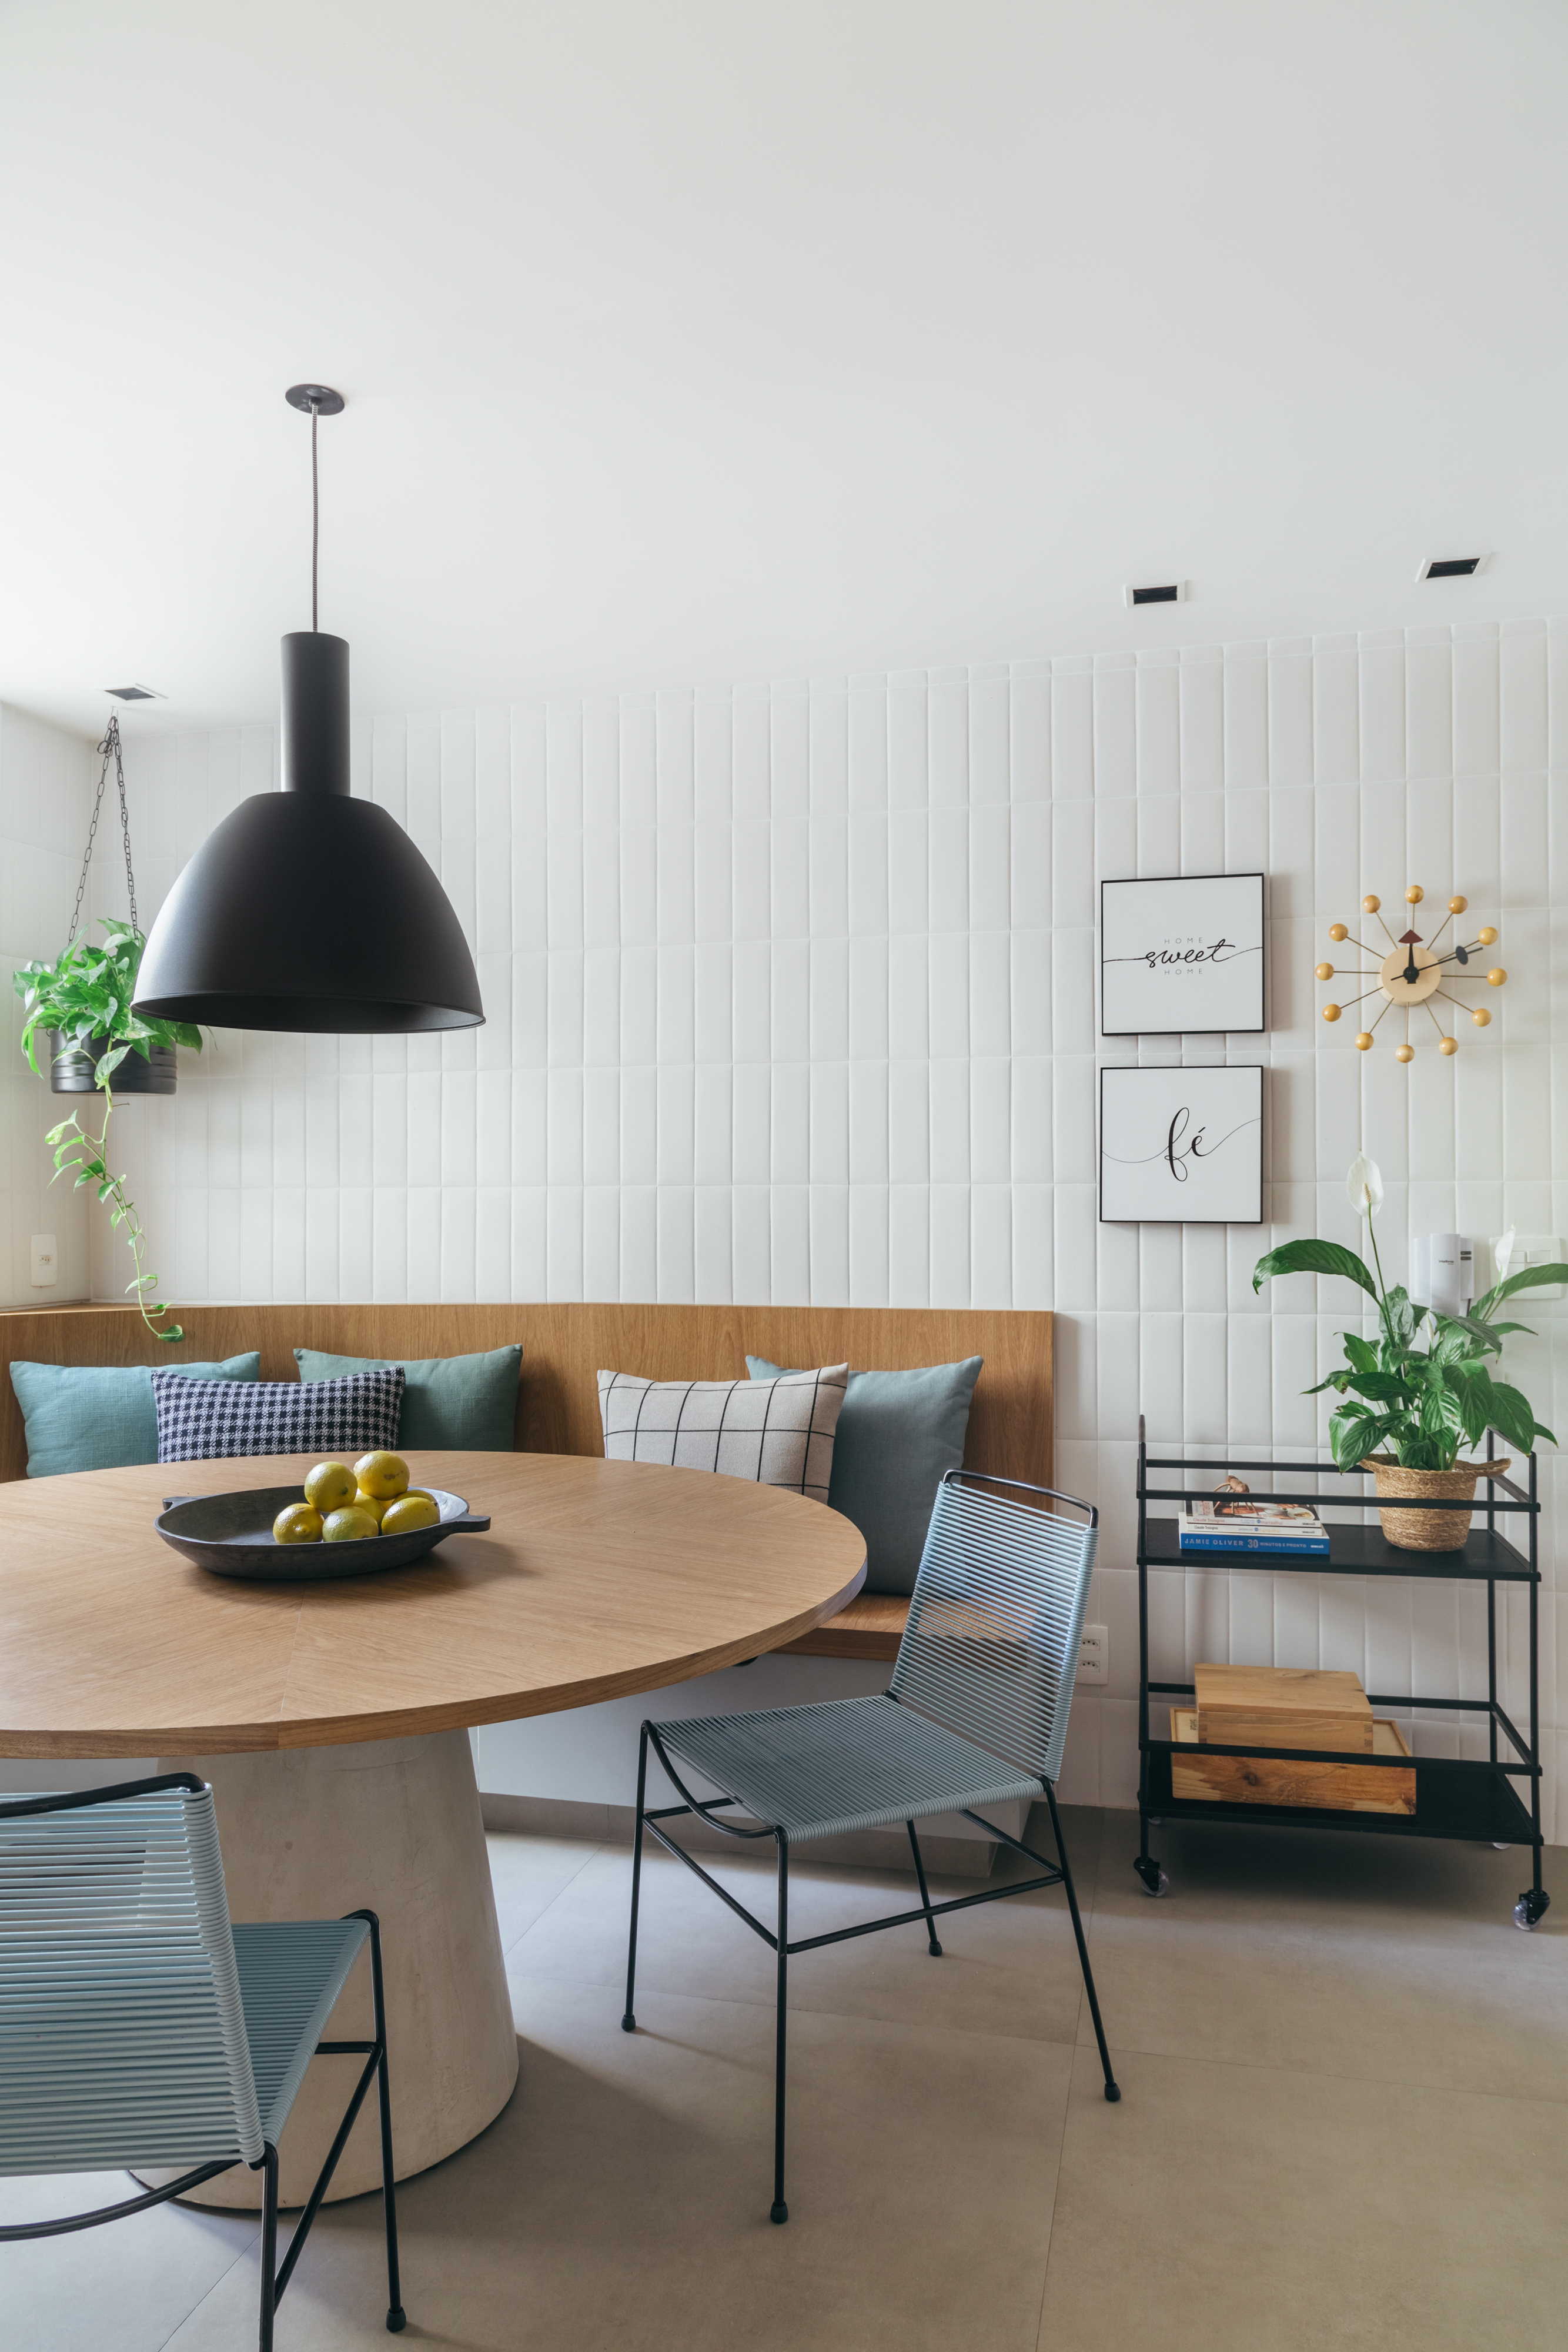 Projeto de Studio A+G Arquitetura. Na foto, cozinha clara com parede de azulejos, canto alemão e mesa redonda.